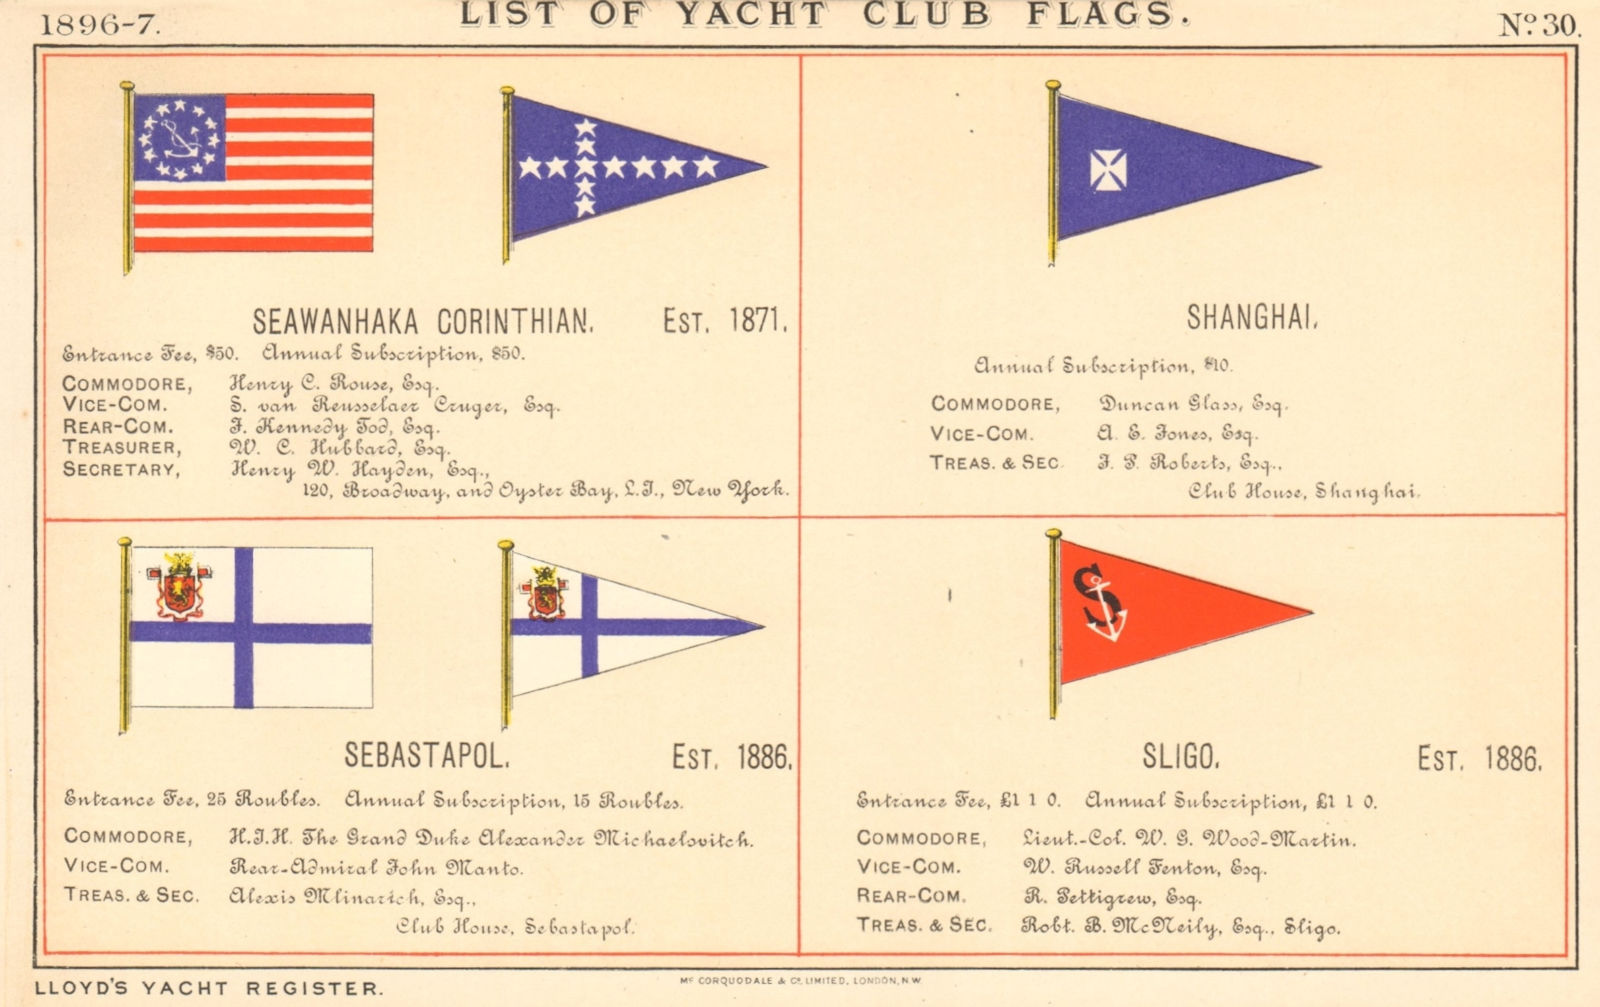 YACHT & SAILING CLUB FLAGS Seawanhaka Corinthian Shanghai Sebastapol Sligo 1896